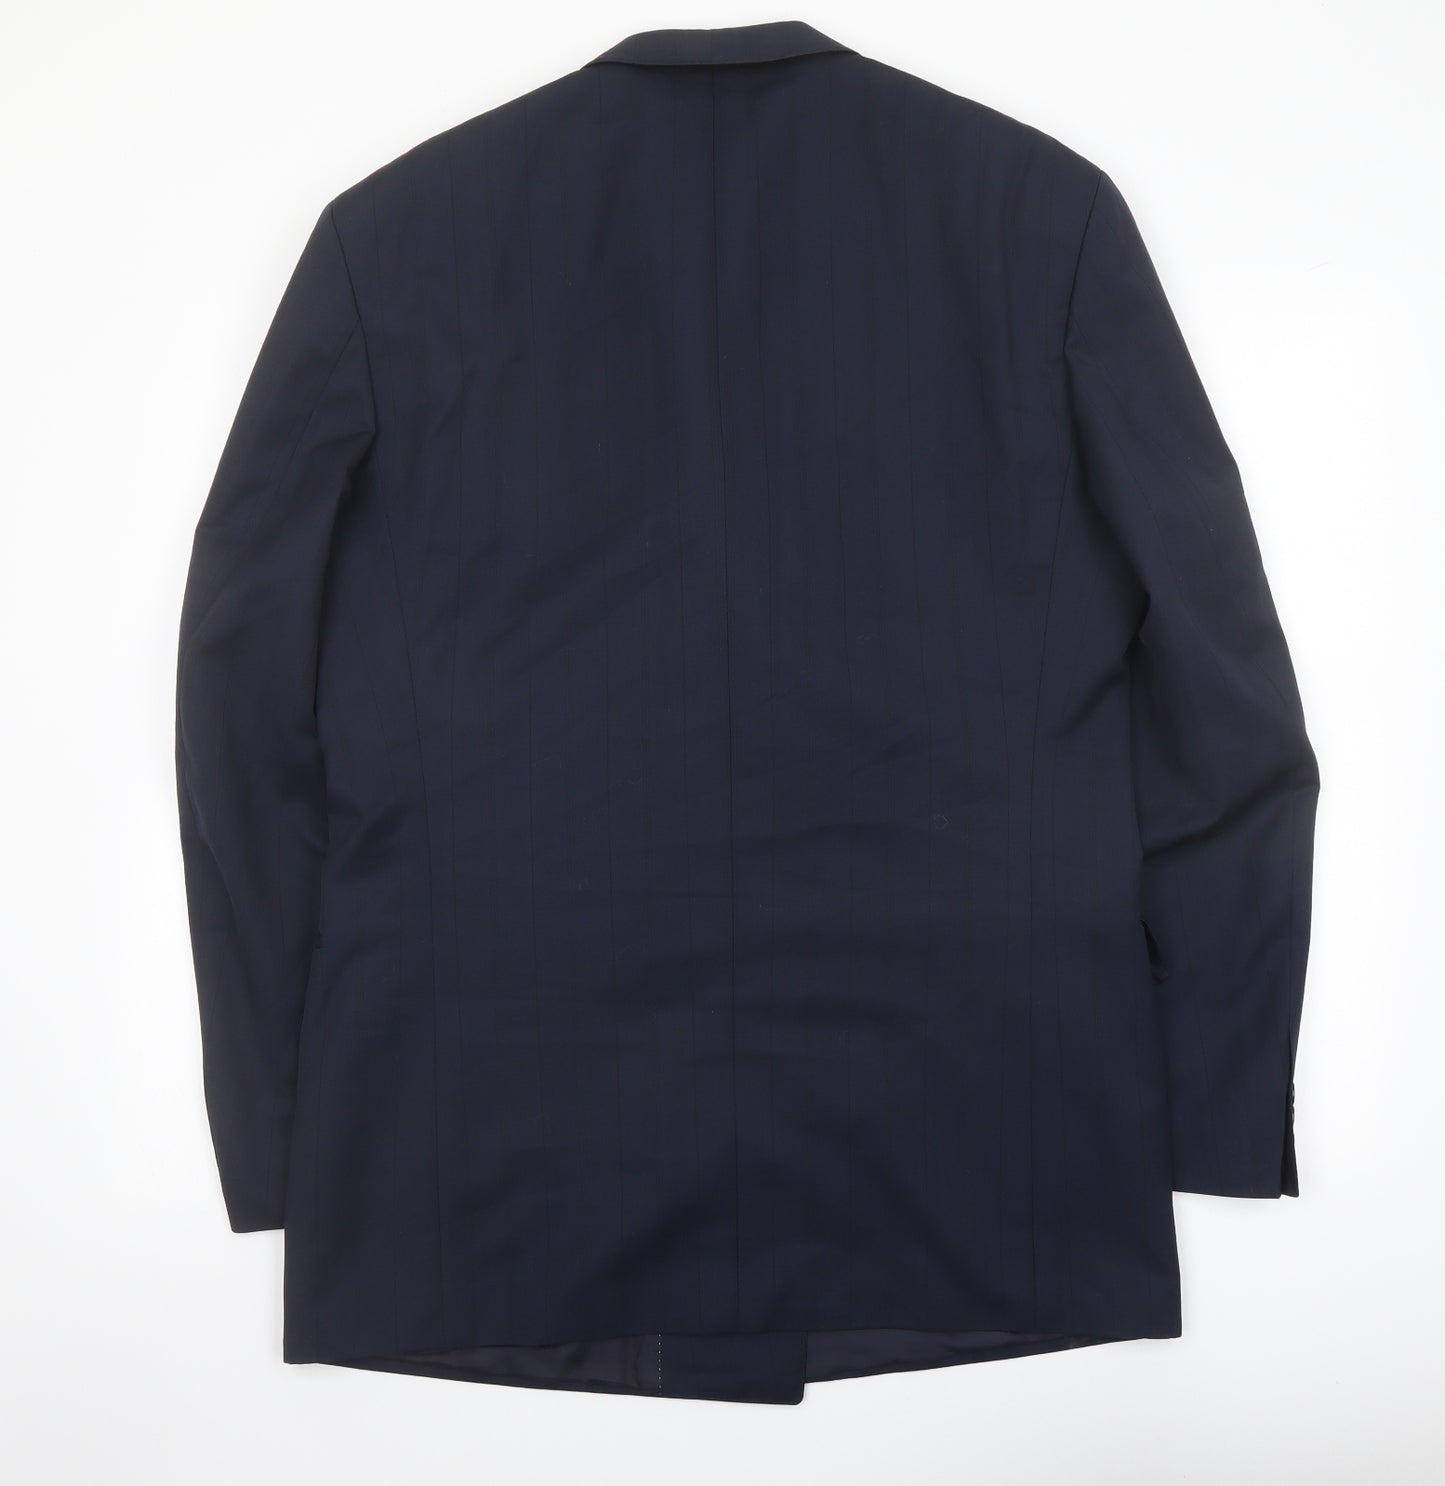 Odermark Mens Blue Polyester Jacket Suit Jacket Size 44 Regular